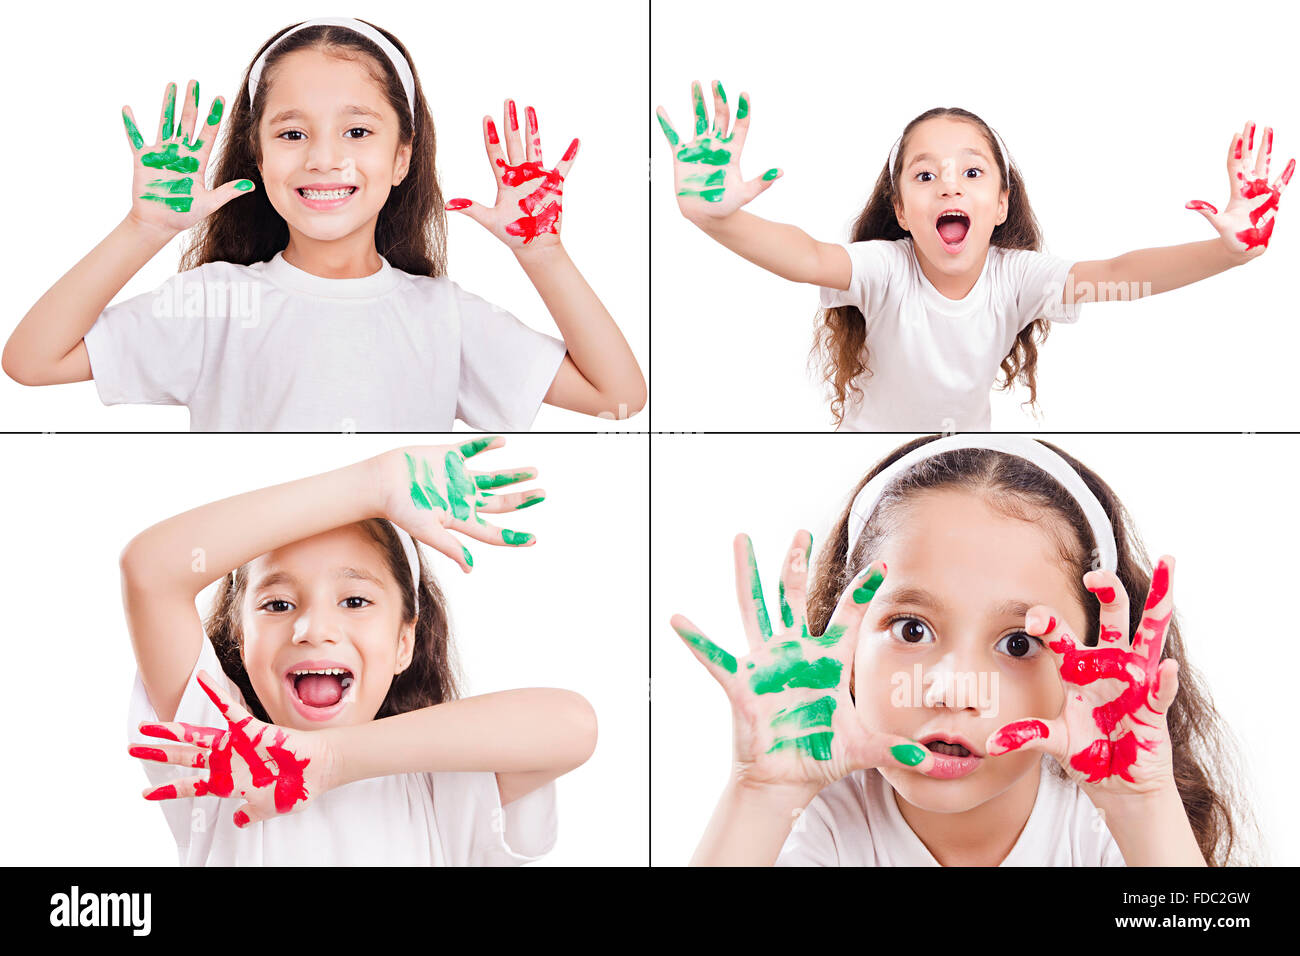 Happy 1 indian kid ragazza disegno mani di pittura vernice che mostra l'espressione del viso FOTO MONTAGE Foto Stock